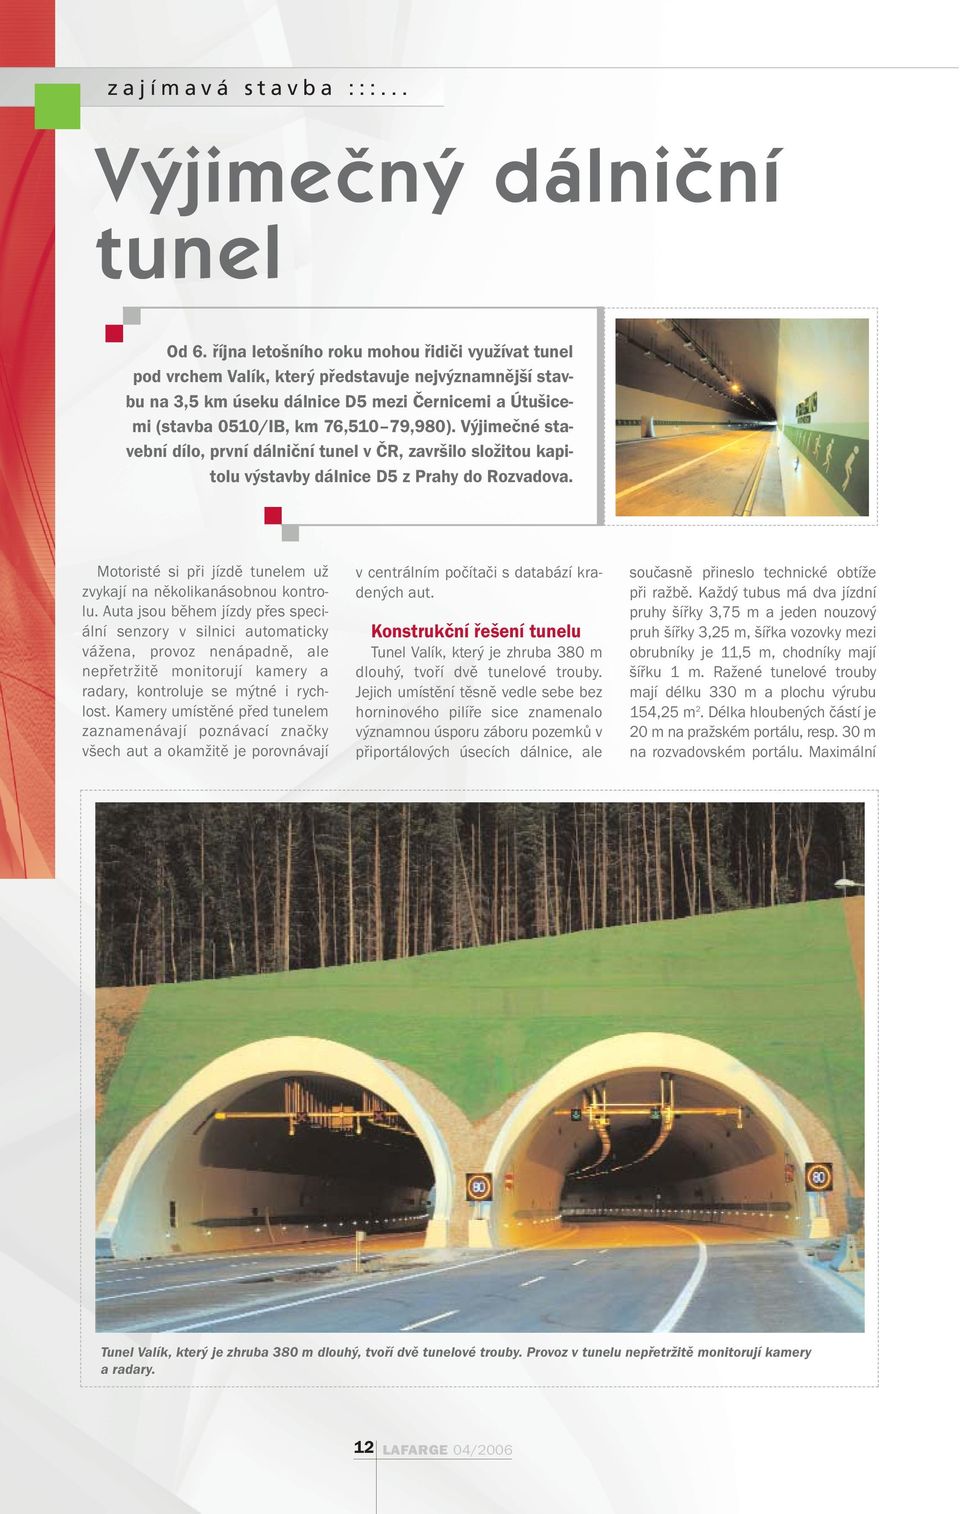 Výjimečné stavební dílo, první dálniční tunel v ČR, završilo složitou kapitolu výstavby dálnice D5 z Prahy do Rozvadova. Motoristé si při jízdě tunelem už zvykají na několikanásobnou kontrolu.